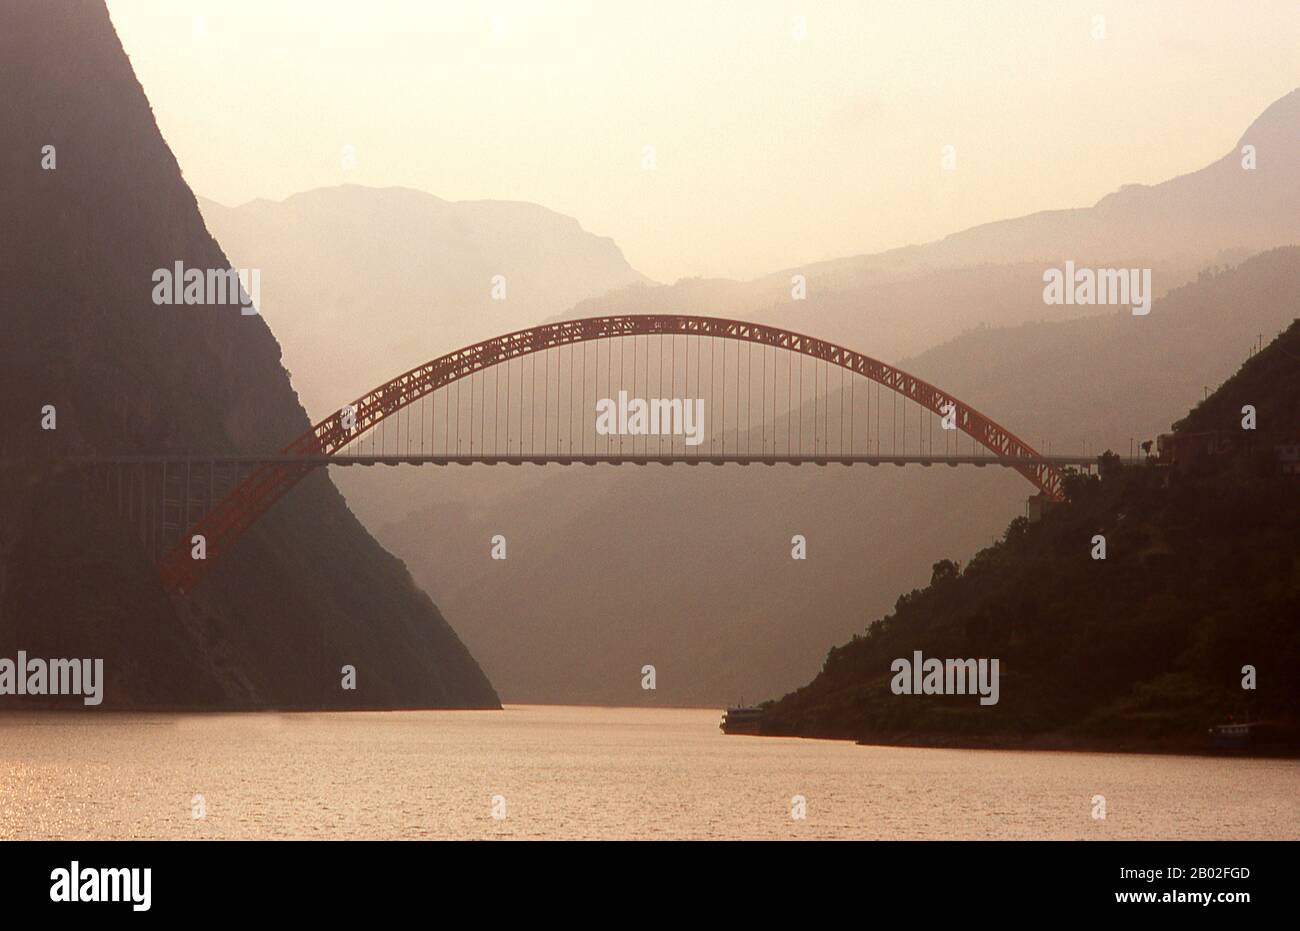 Les Trois Gorges ou les Gorges du Yangtze s'étendent des villes ouest—upriver de Fengjie et de Yichang dans la municipalité de Chongqing vers l'est—en aval de la province de Hubei. La région du Yangtze (Chang Jiang)—Trois Gorges a une longueur totale d'environ 200 kilomètres. Les Trois Gorges occupent environ 120 kilomètres dans cette région. Le Chang Jiang (fleuve Yangzi) est la plus longue rivière de Chine et la troisième plus longue au monde. Connue en amont sous le nom de Golden Sand River, elle traverse le cœur géographique, spirituel et historique de la Chine. De sa source dans la Tanggula Banque D'Images